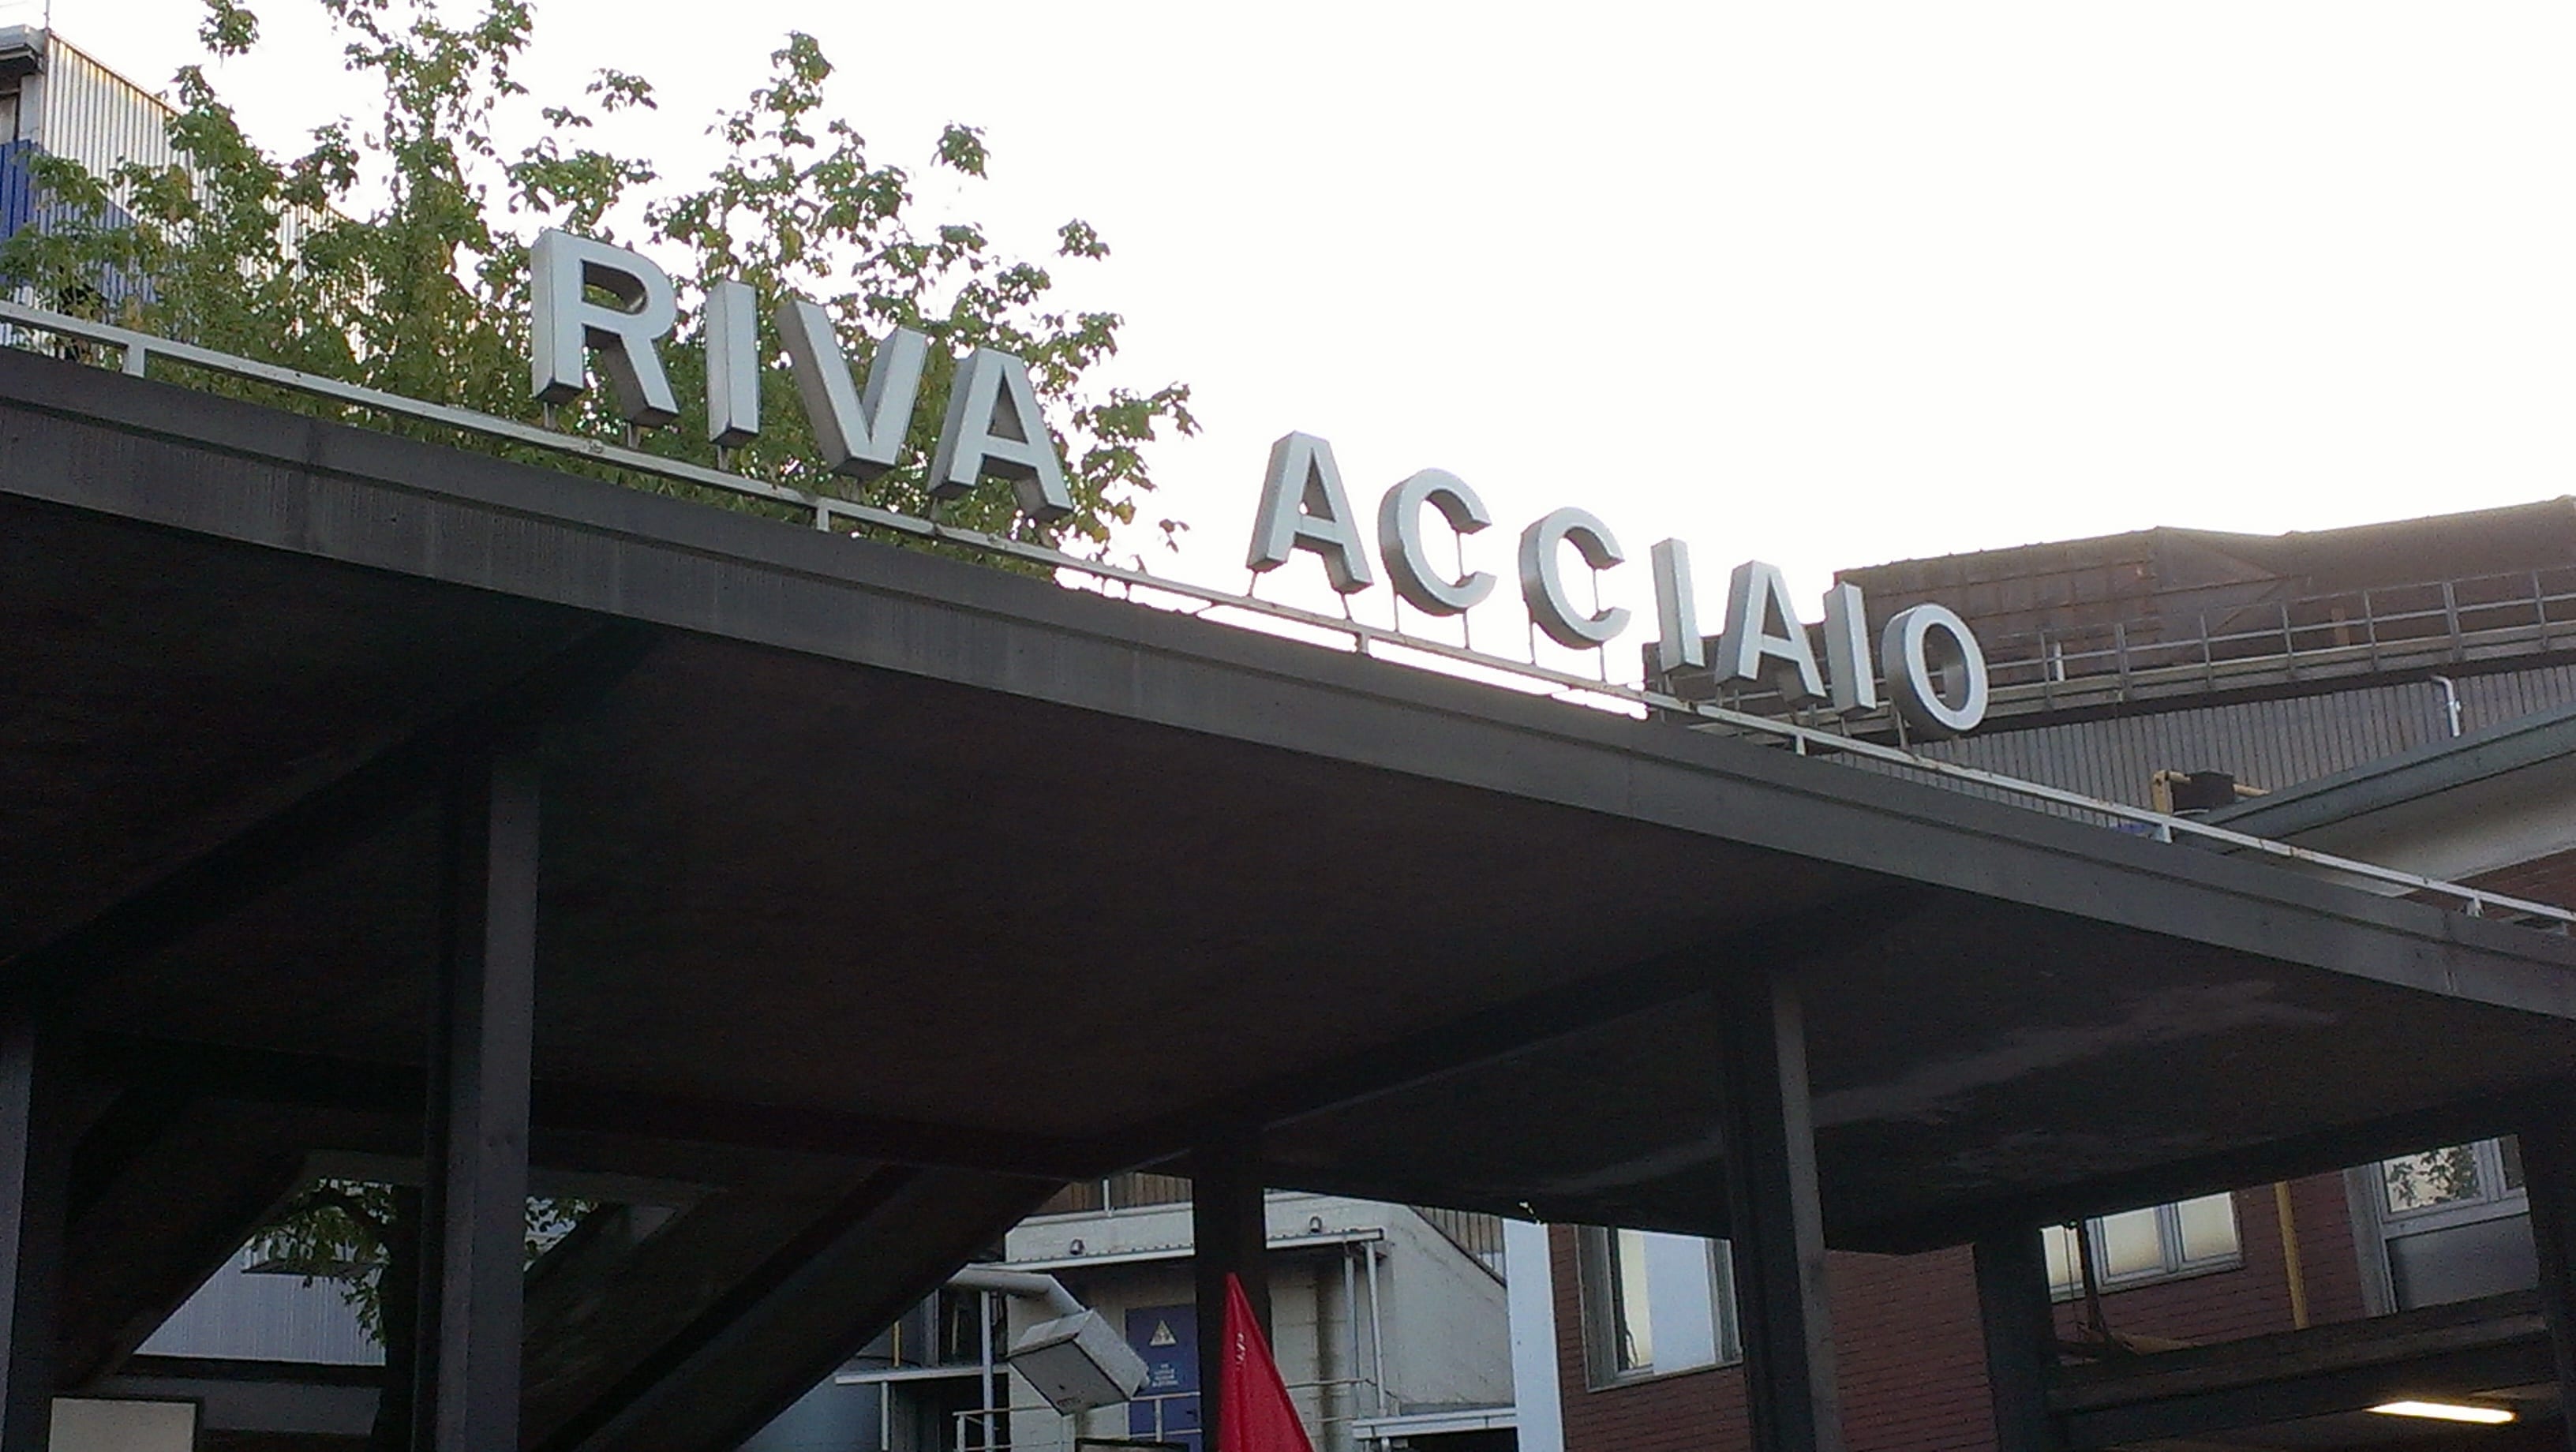 Riva Acciaio - Caronno Pertusella (VA)